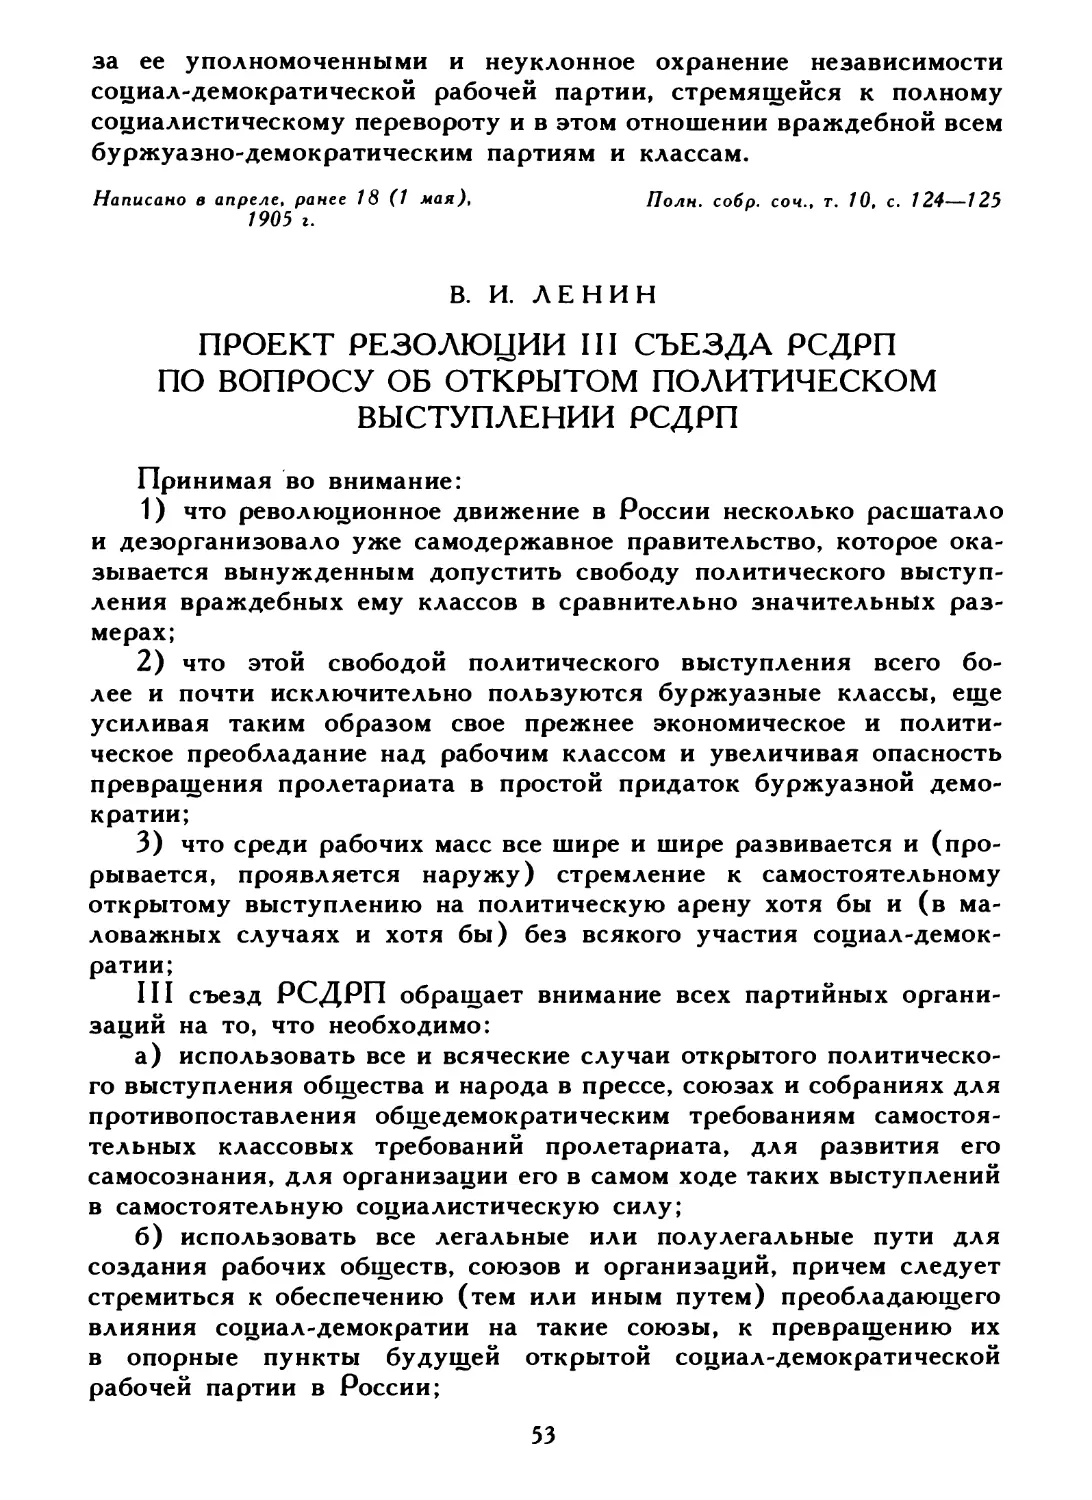 В. И. Ленин. Проект резолюции III съезда РСДРП по вопросу об открытом политическом выступлении РСДРП